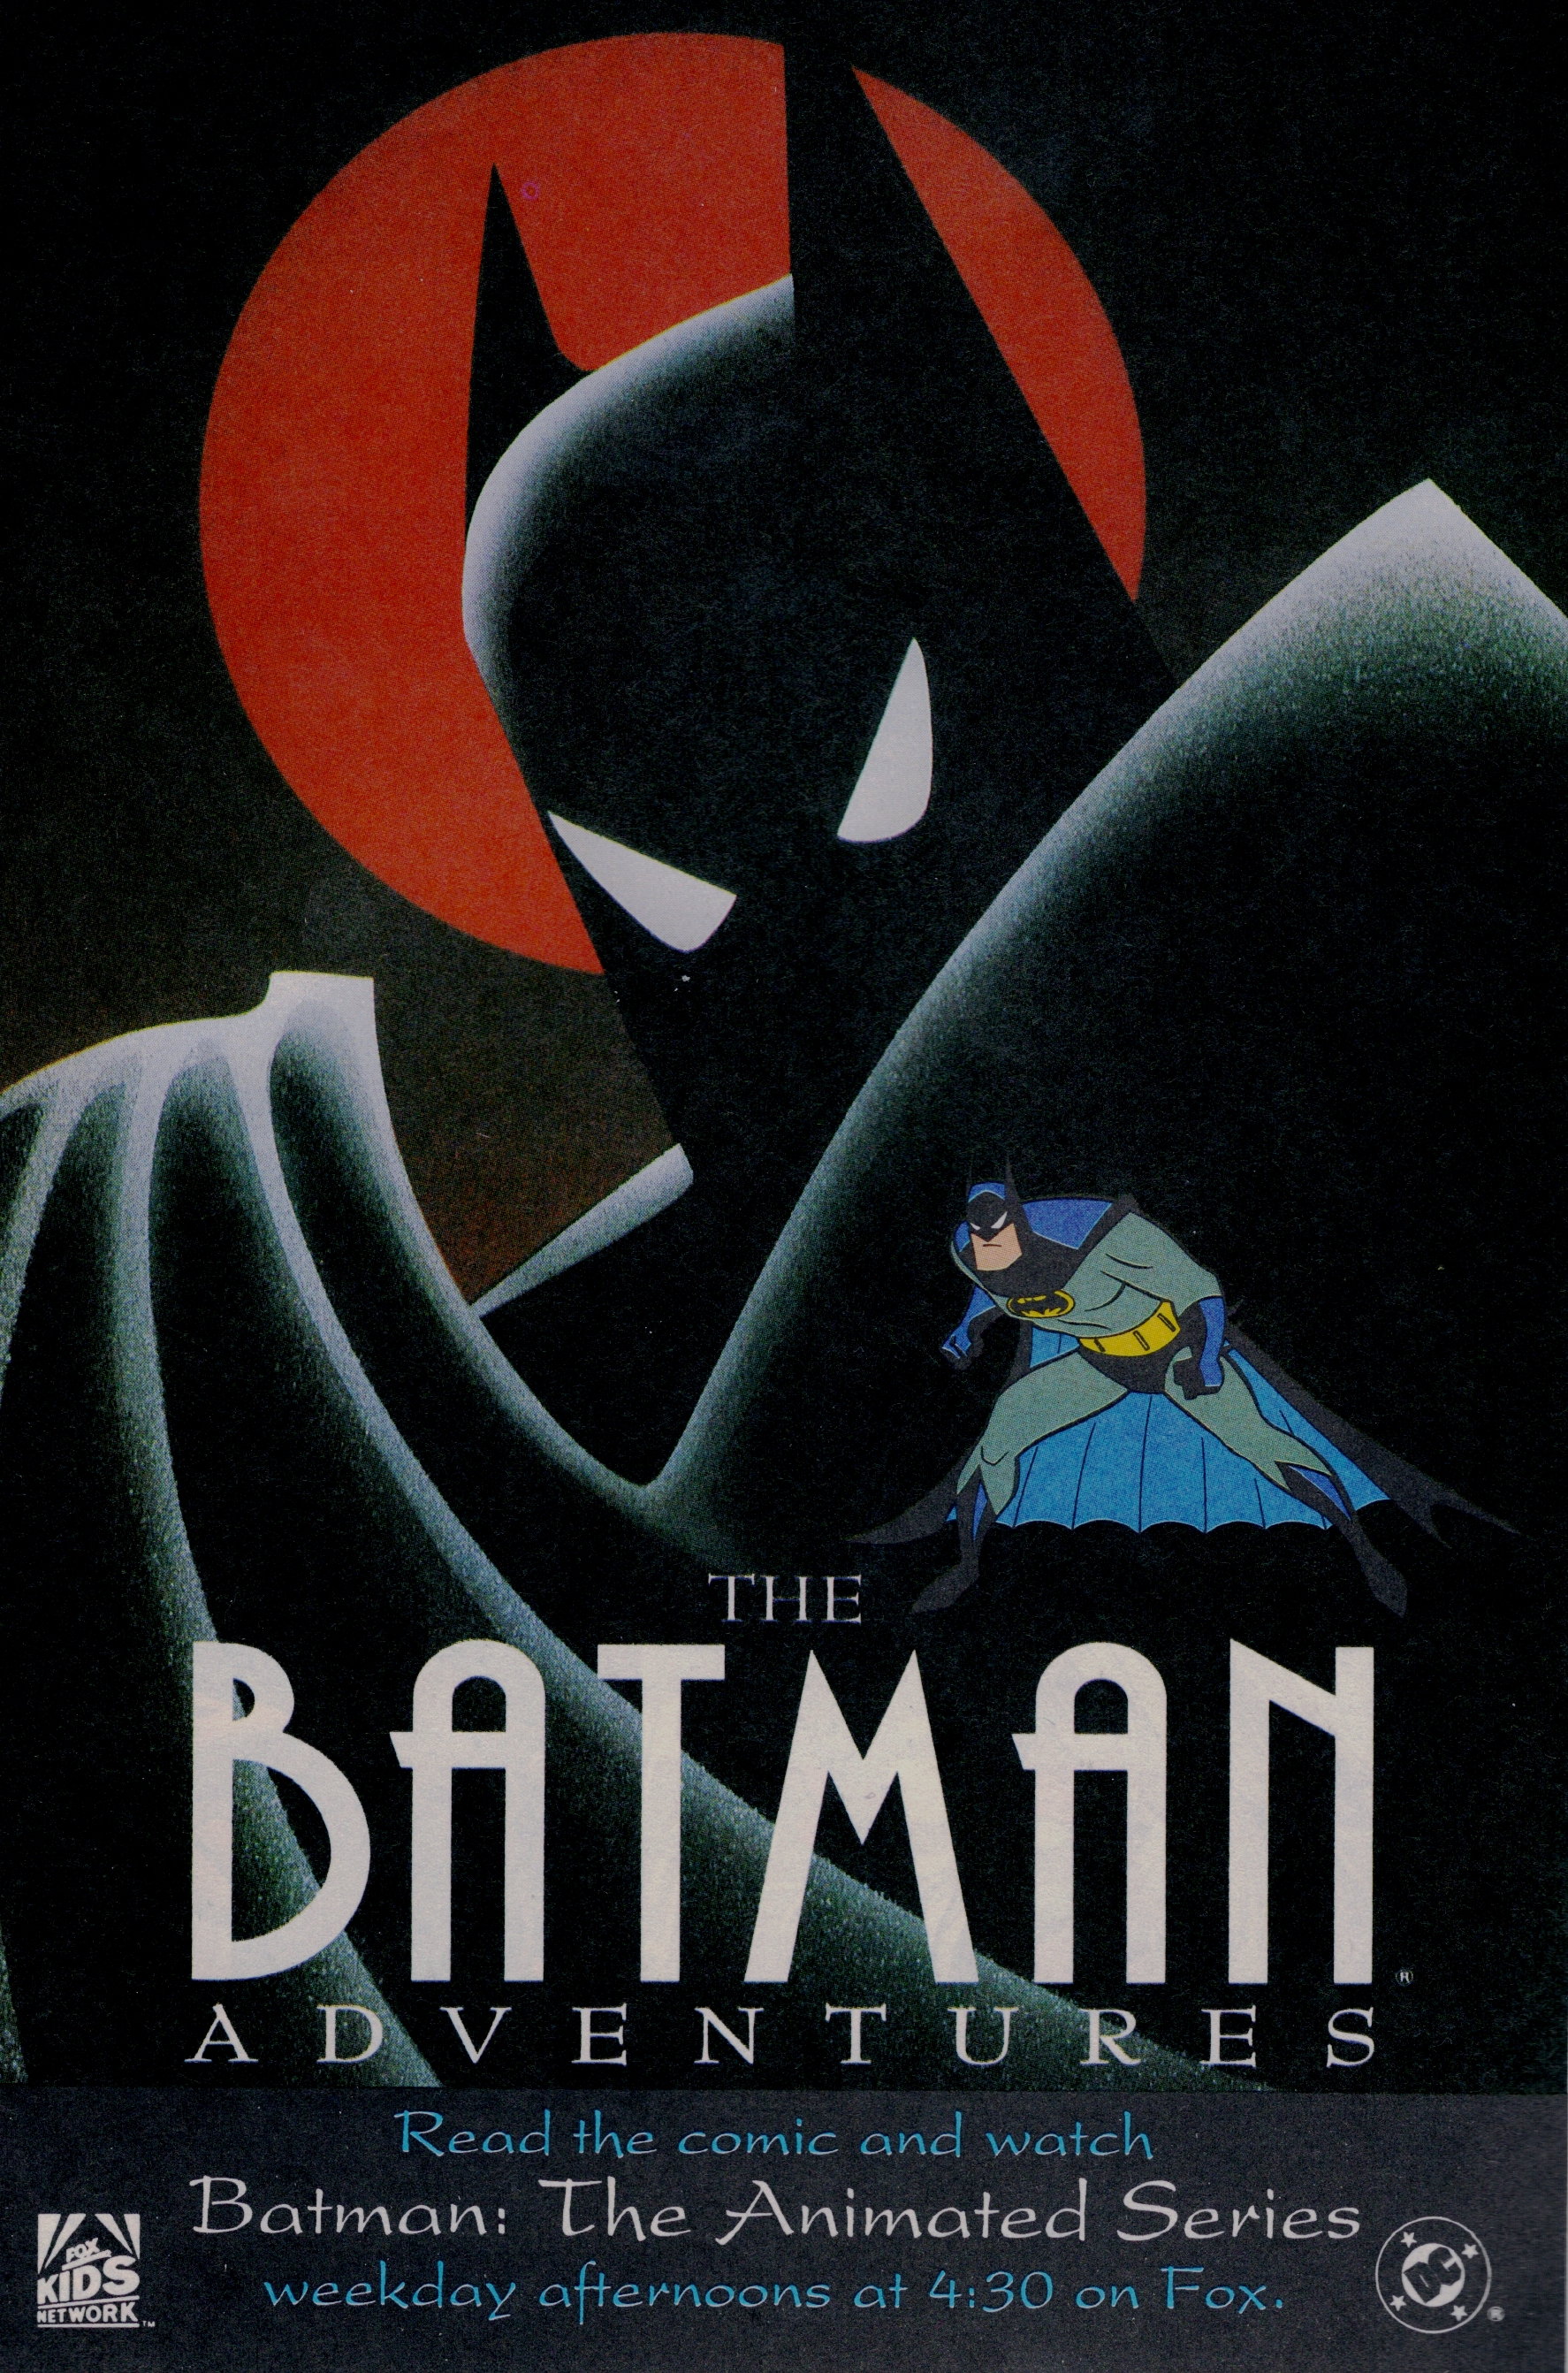 download the adventures of batman & robin genesis